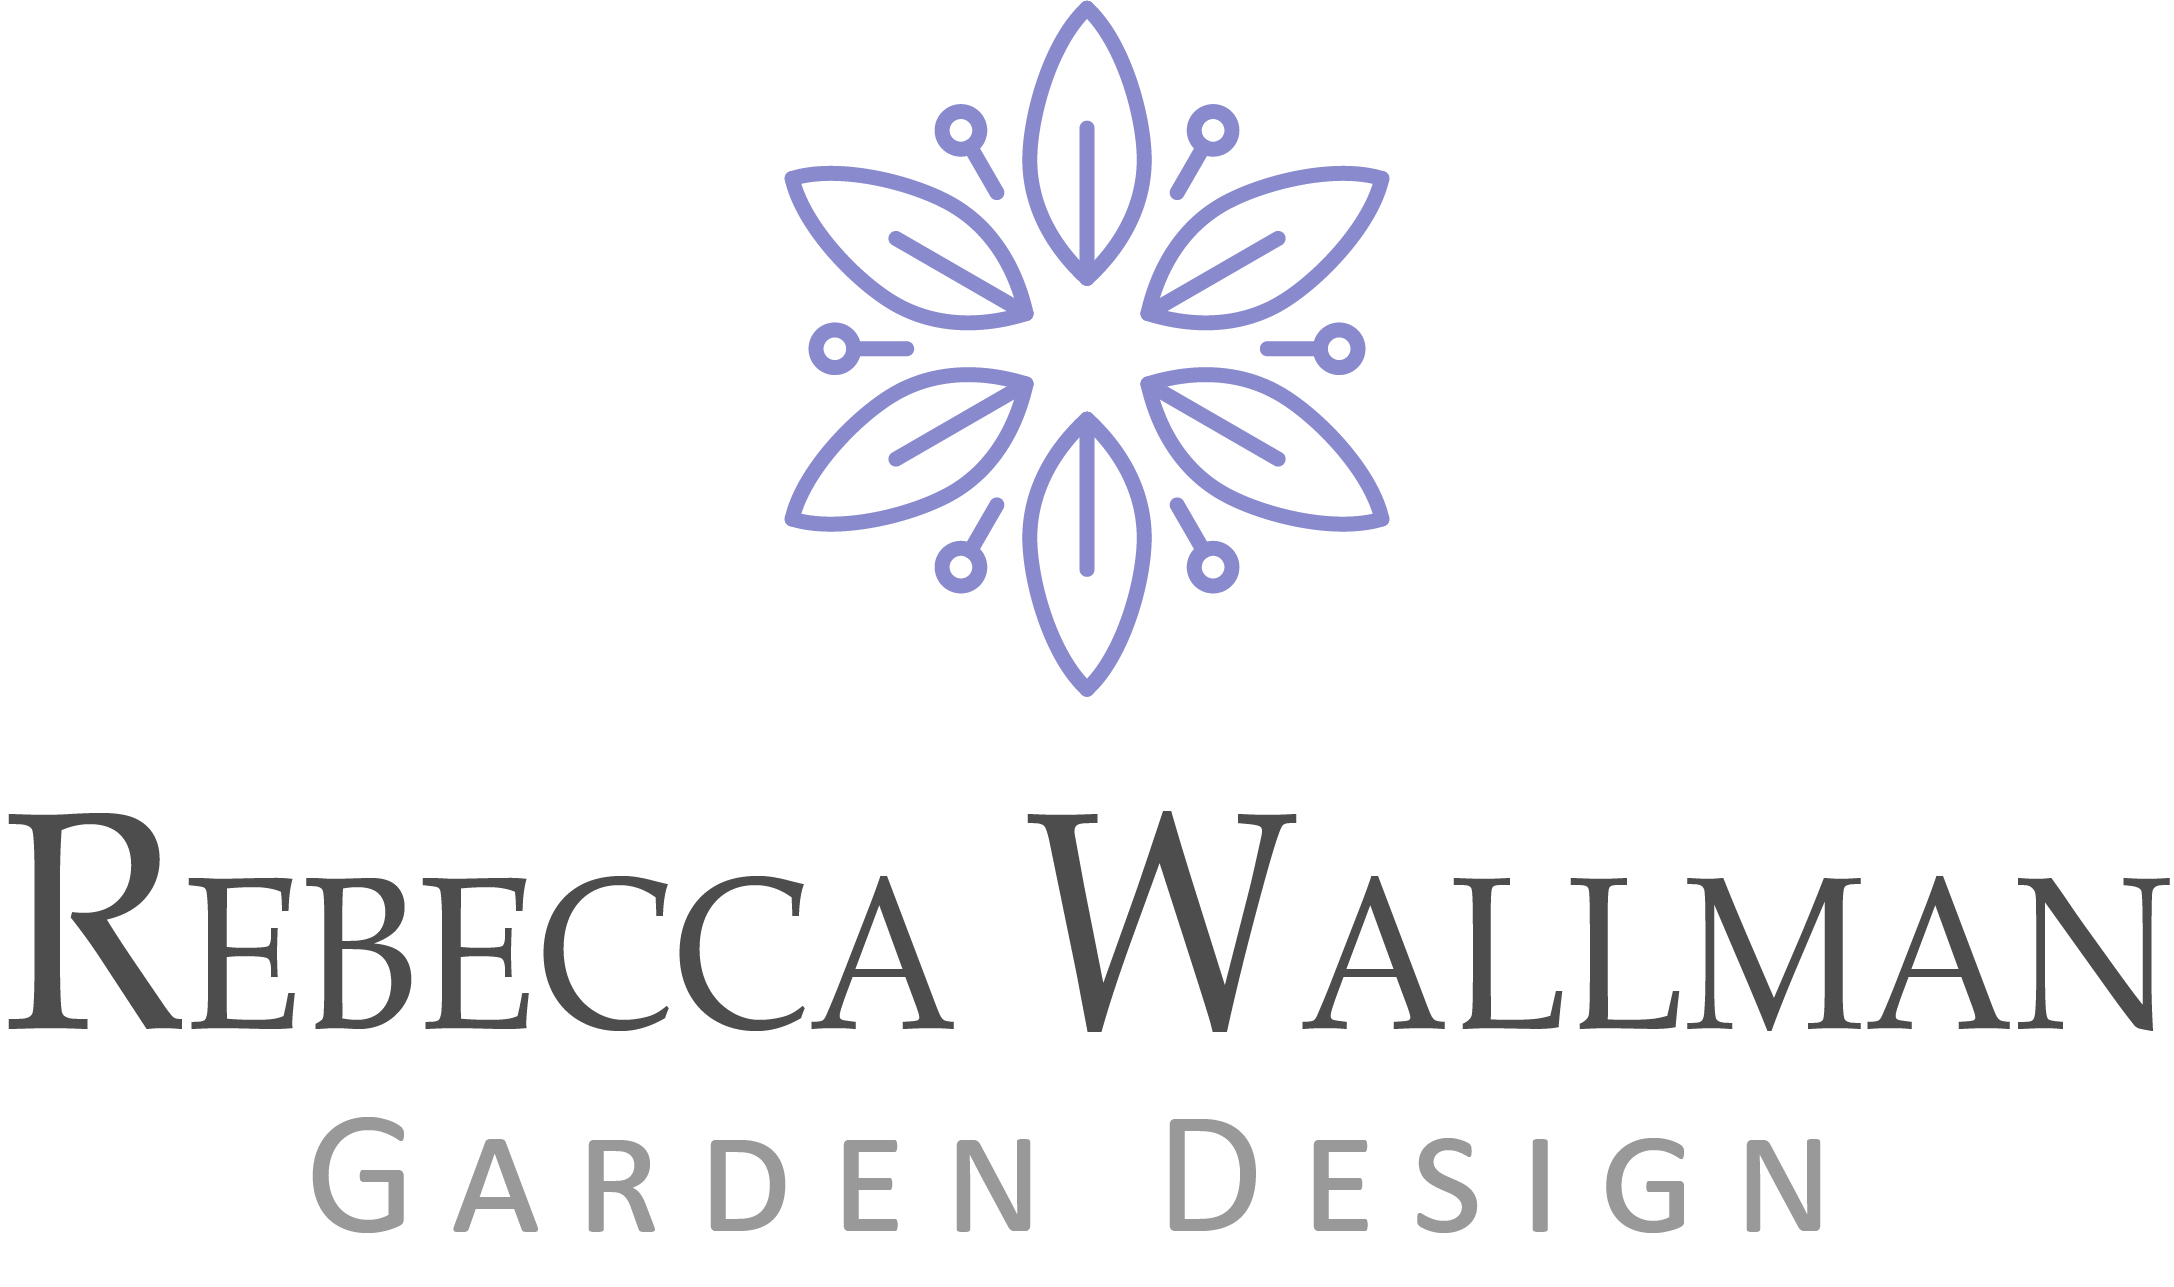 Rebecca Wallman Garden Design | Our Work|